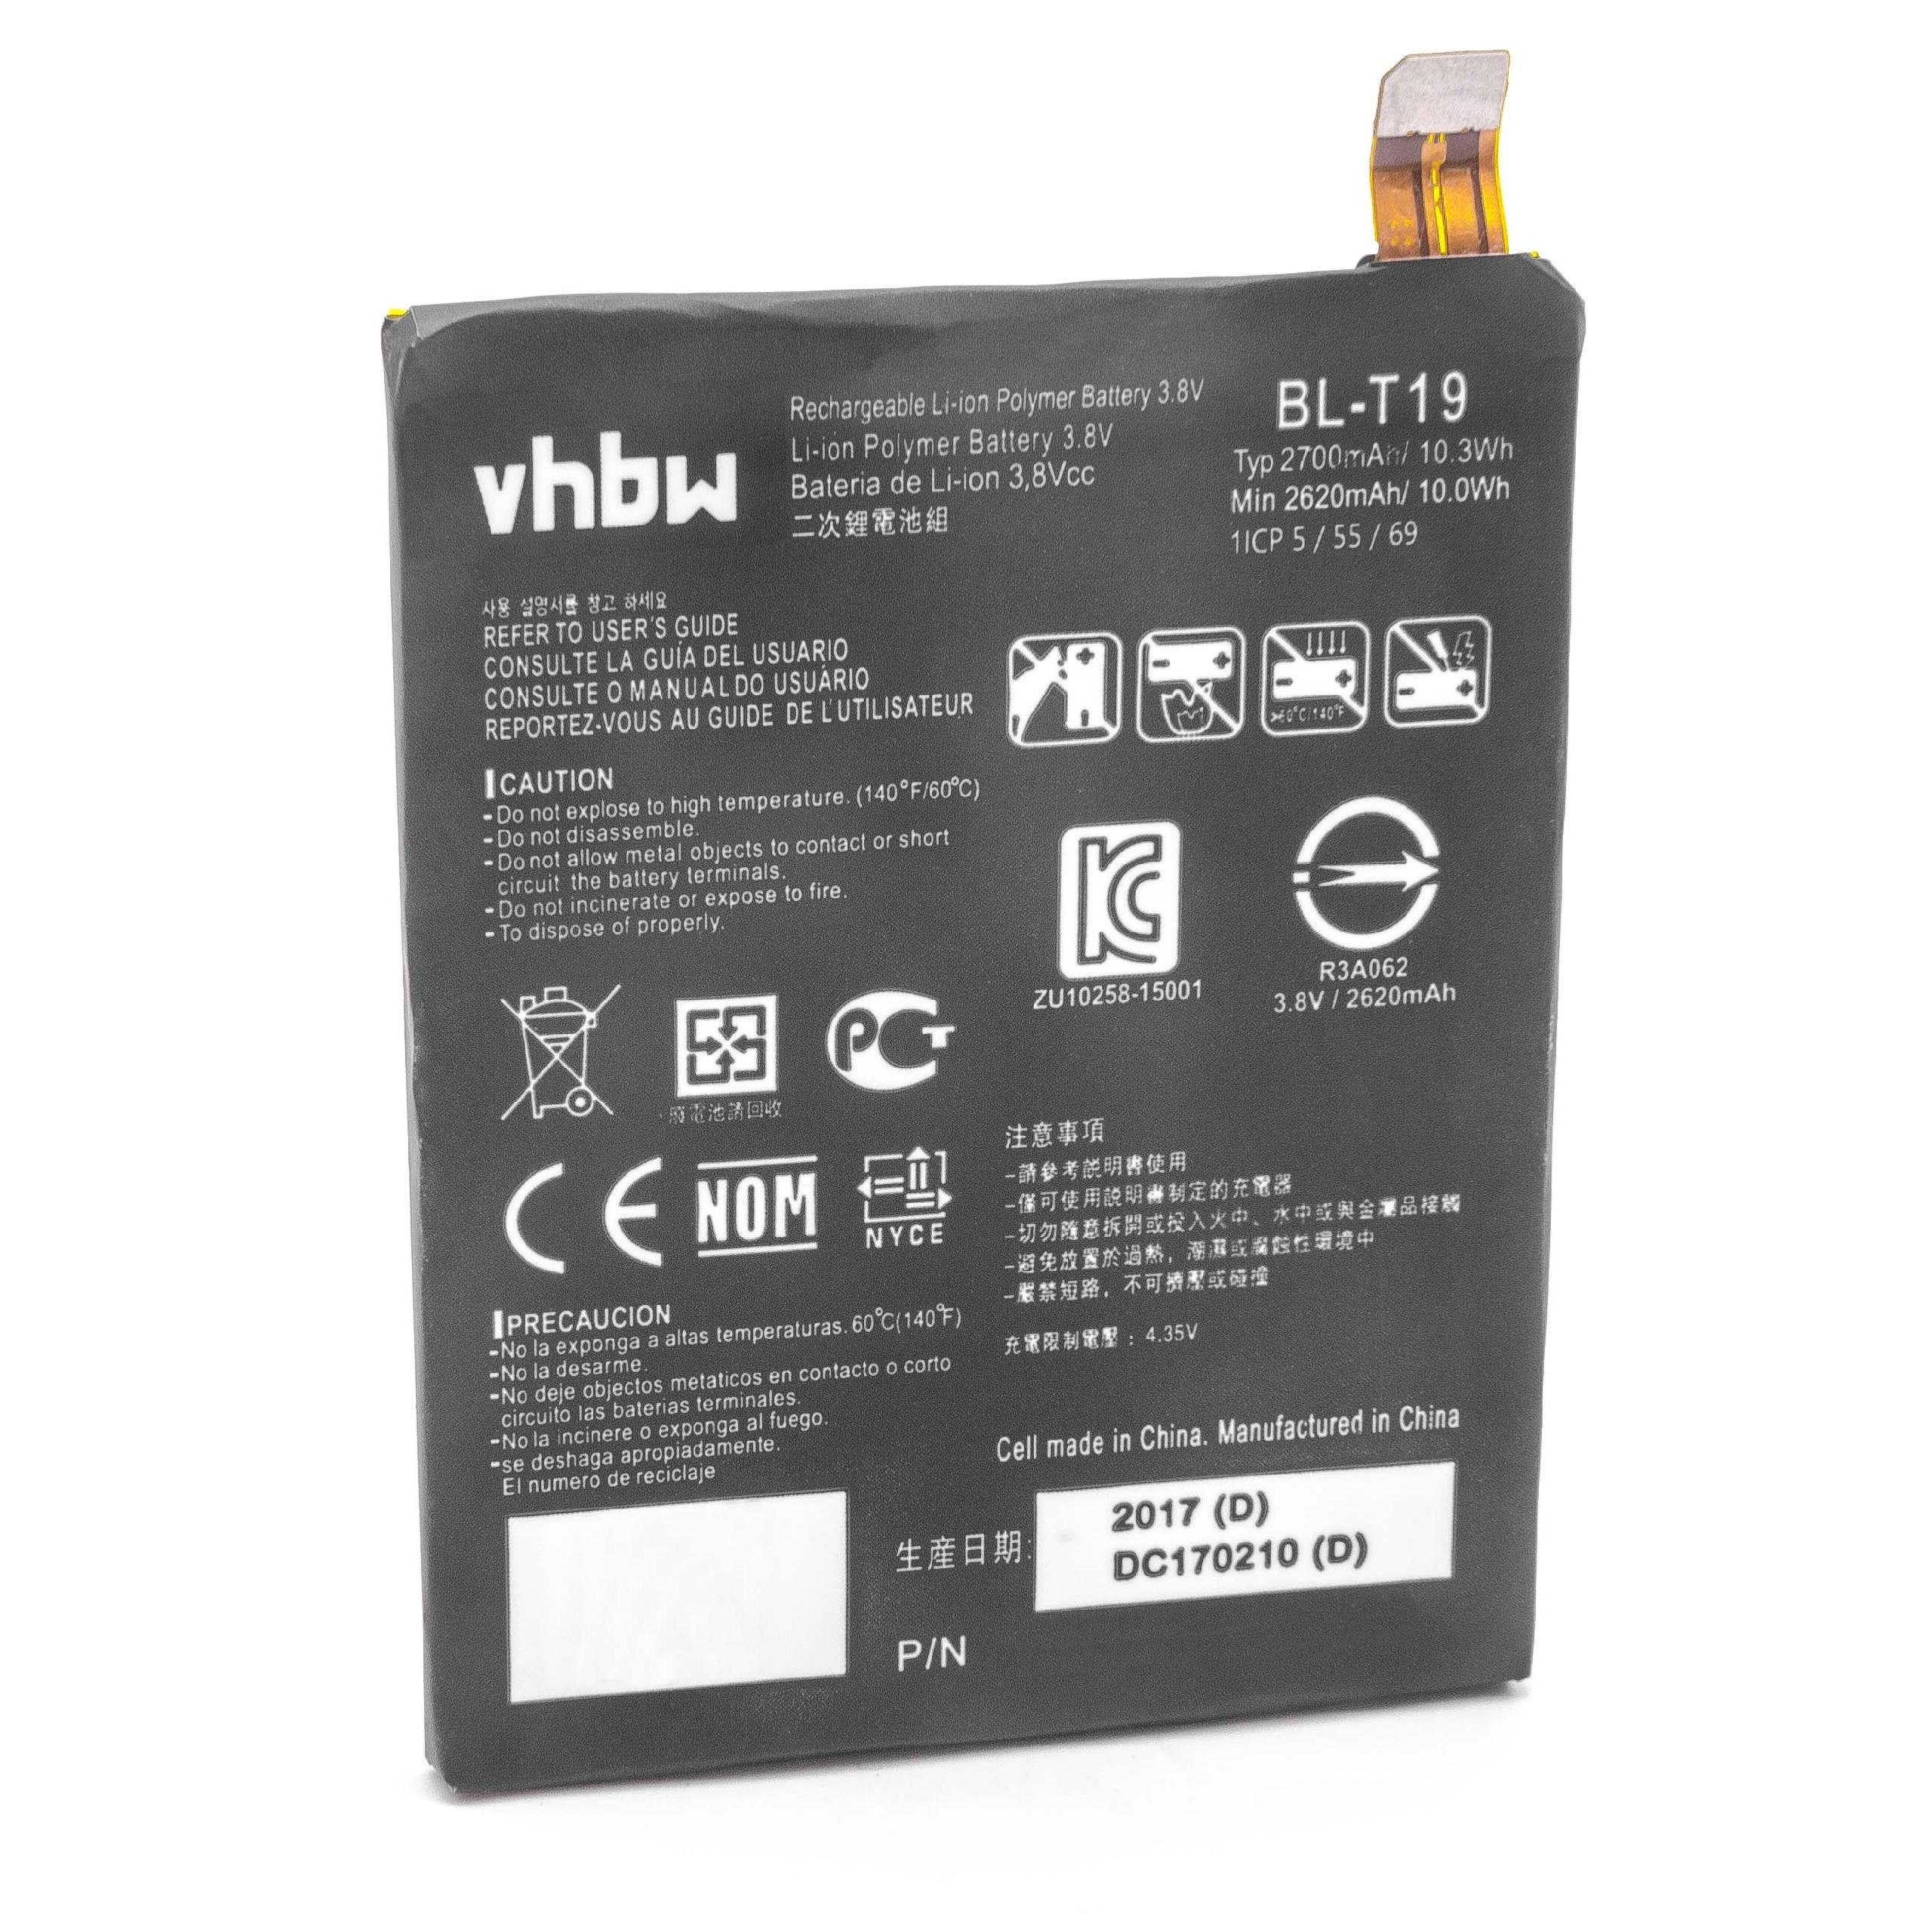 vhbw kompatibel mit LG Bullhead, H791, H791F, H790, H798 Smartphone-Akku Li-Polymer 2600 mAh (3,8 V)